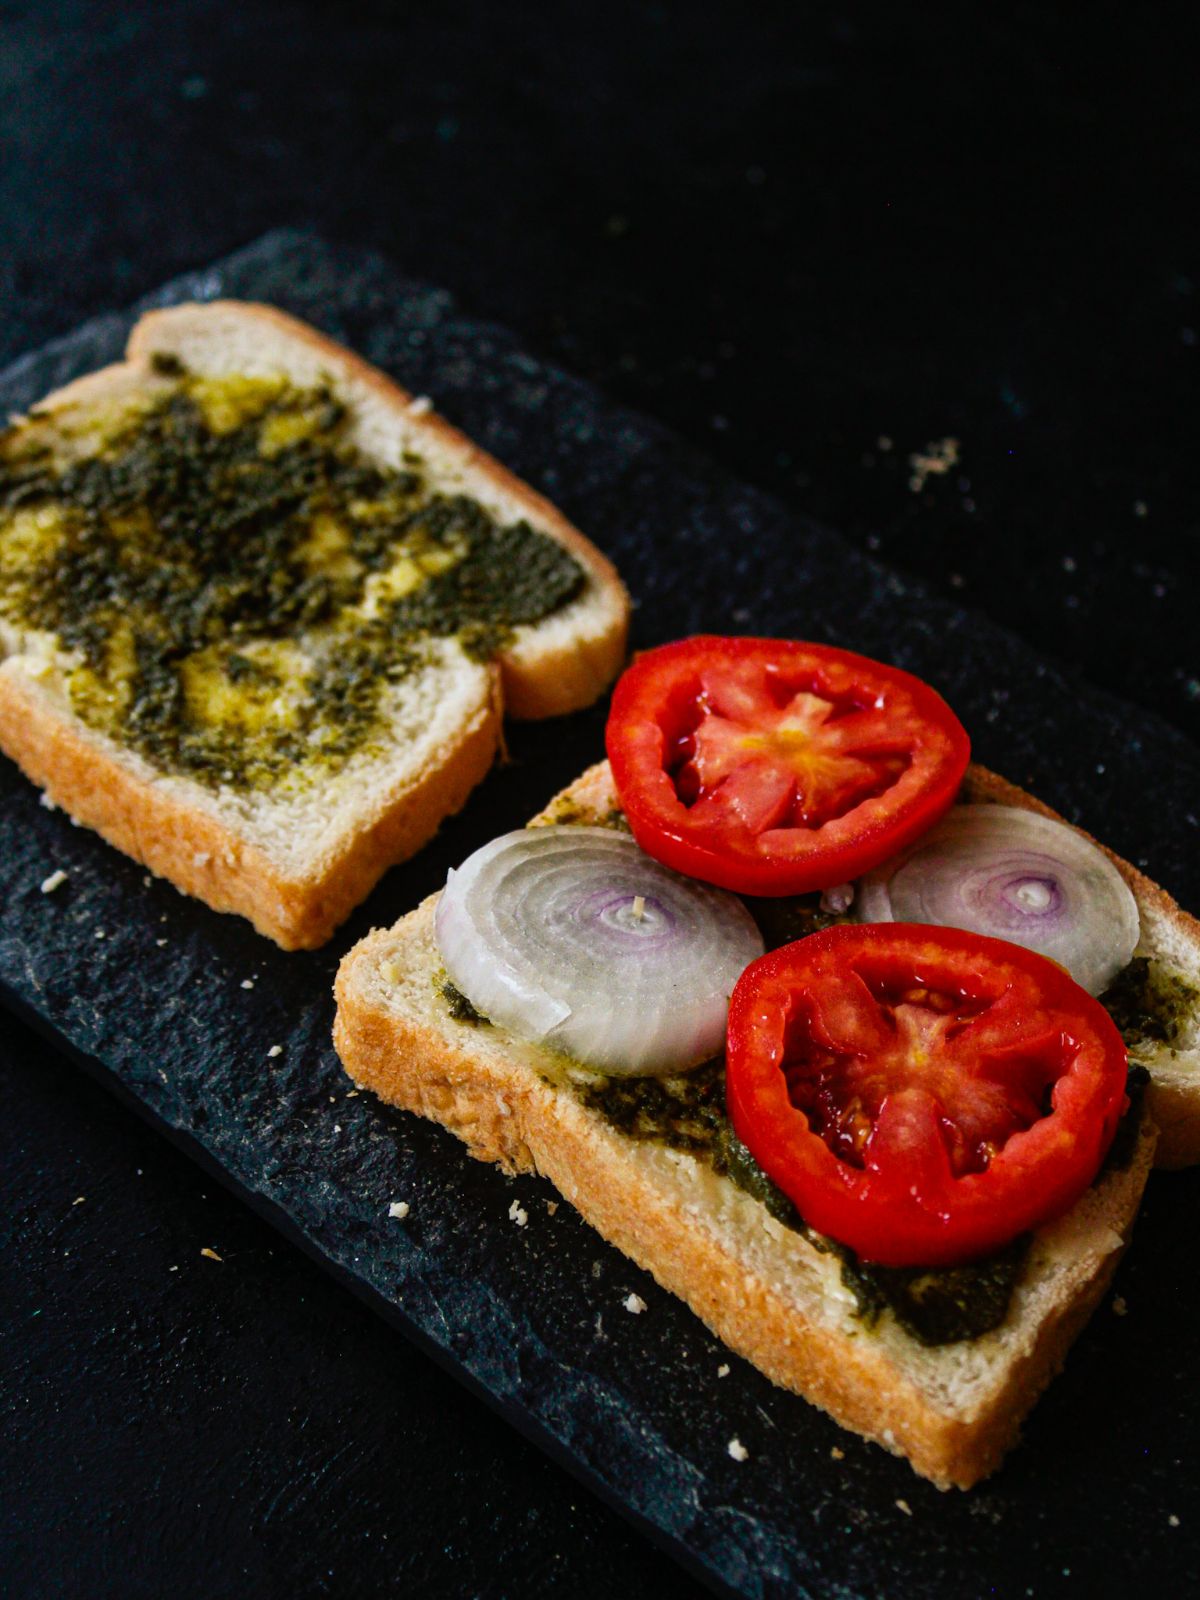 два ломтика хлеба с зеленым чатни и овощами на столе